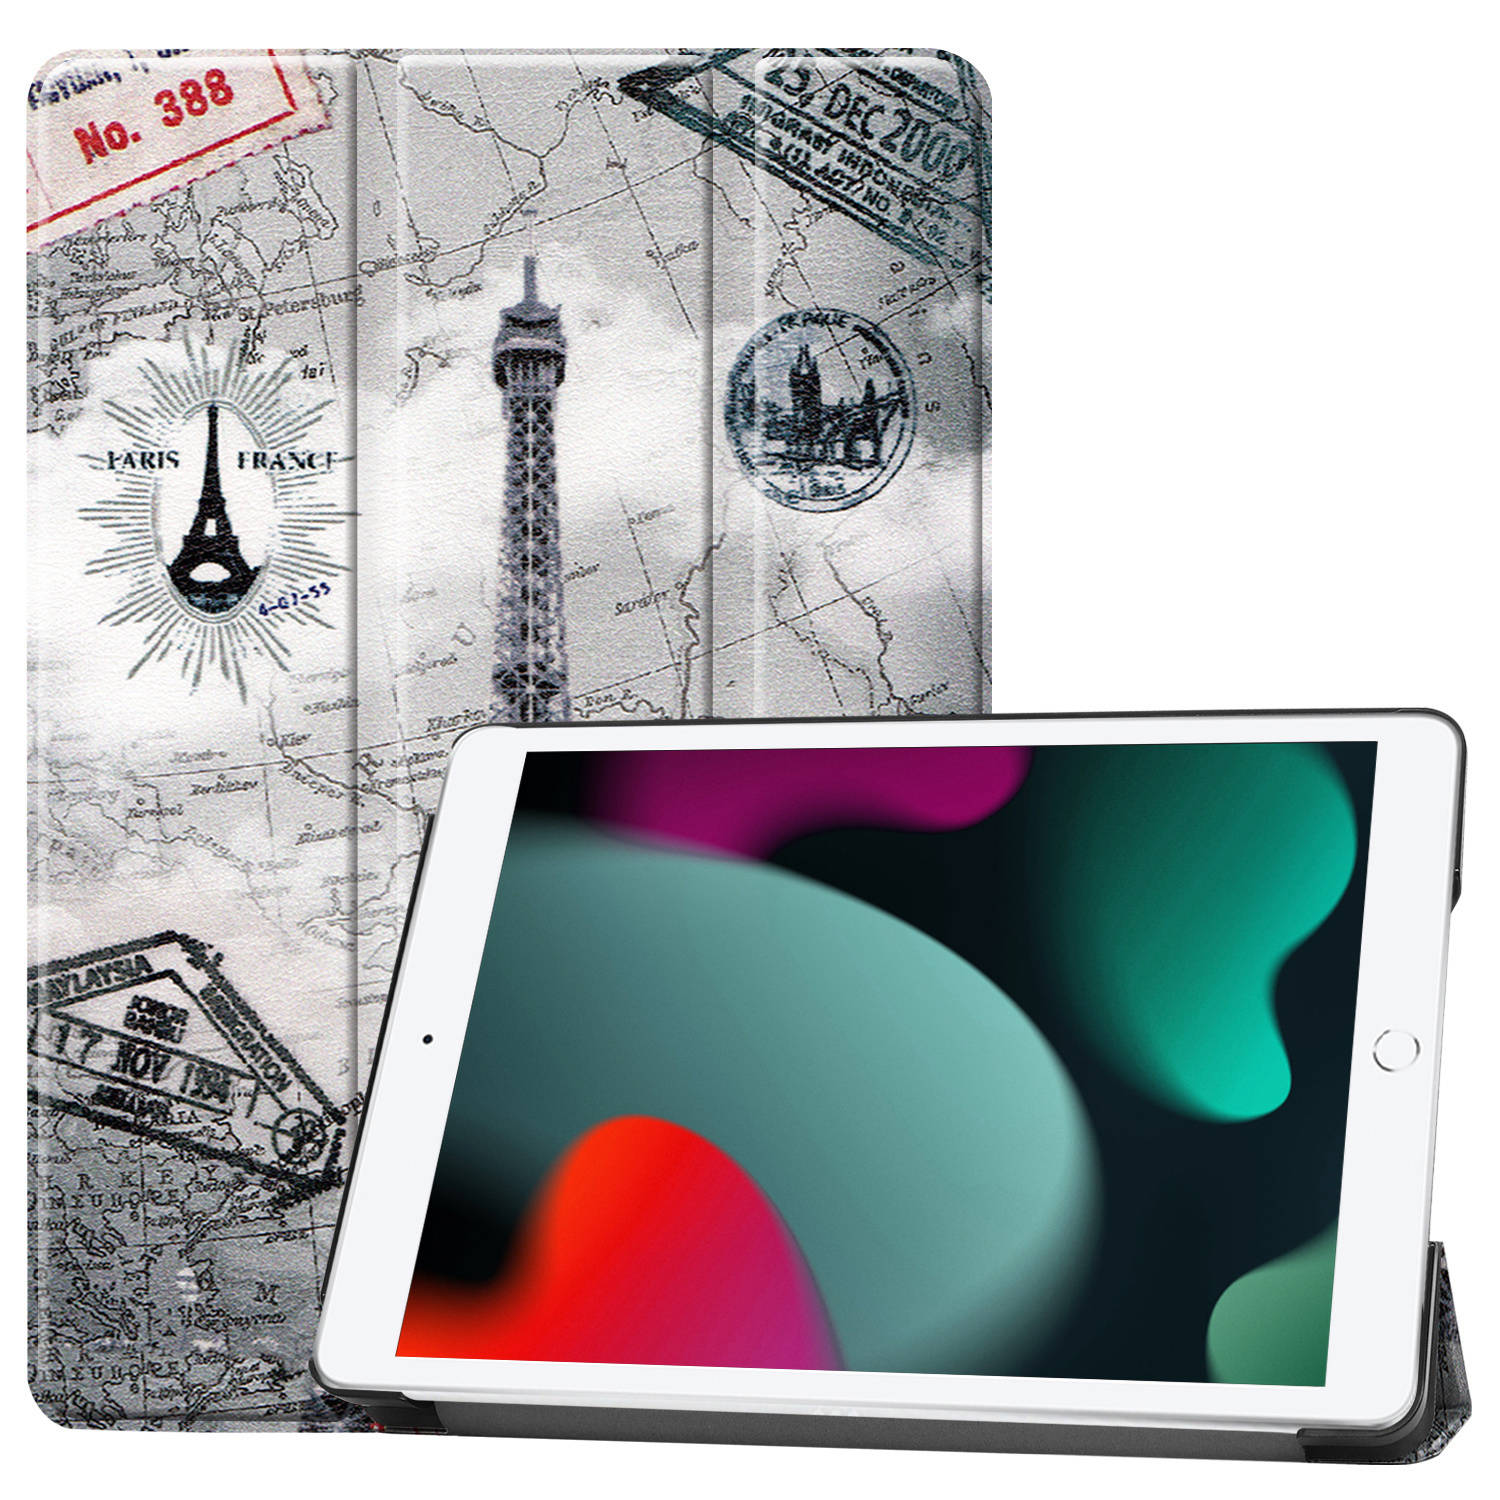 Basey iPad 10.2 2019 Hoes Book Case Hoesje - iPad 10.2 2019 Hoesje Hard Cover Case Hoes - Eiffeltoren